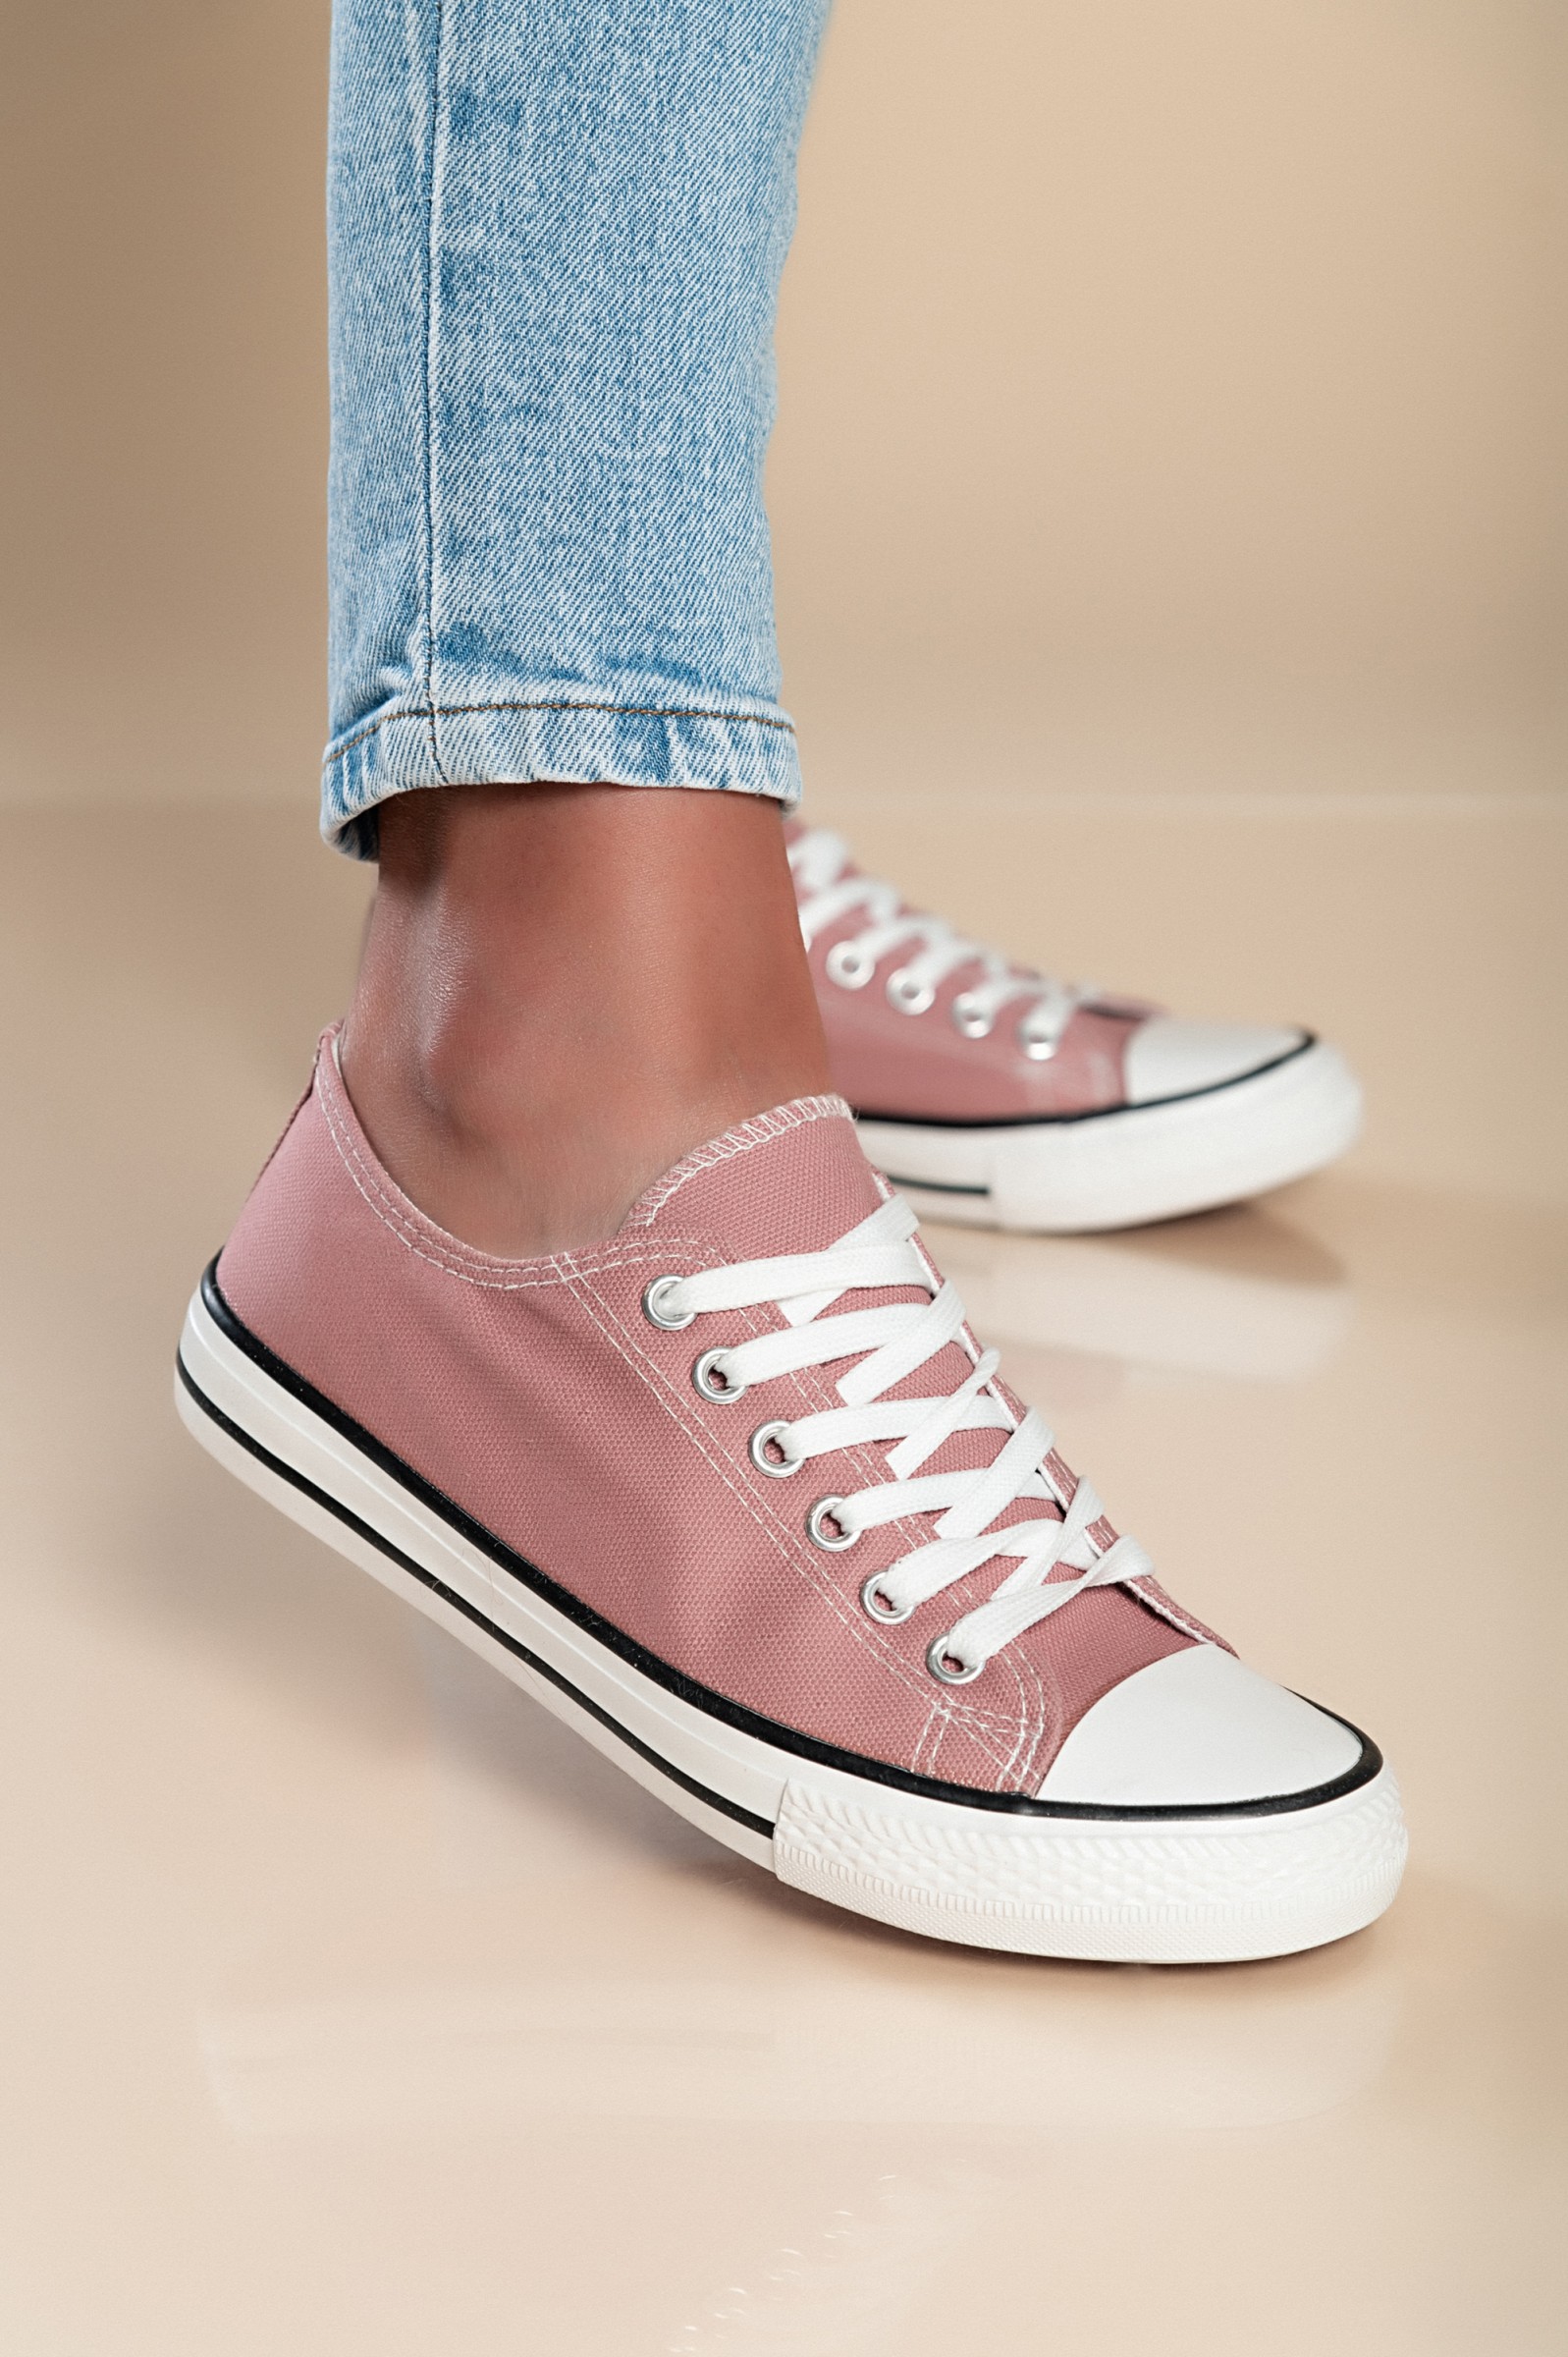 Zapatillas moda de rosa.